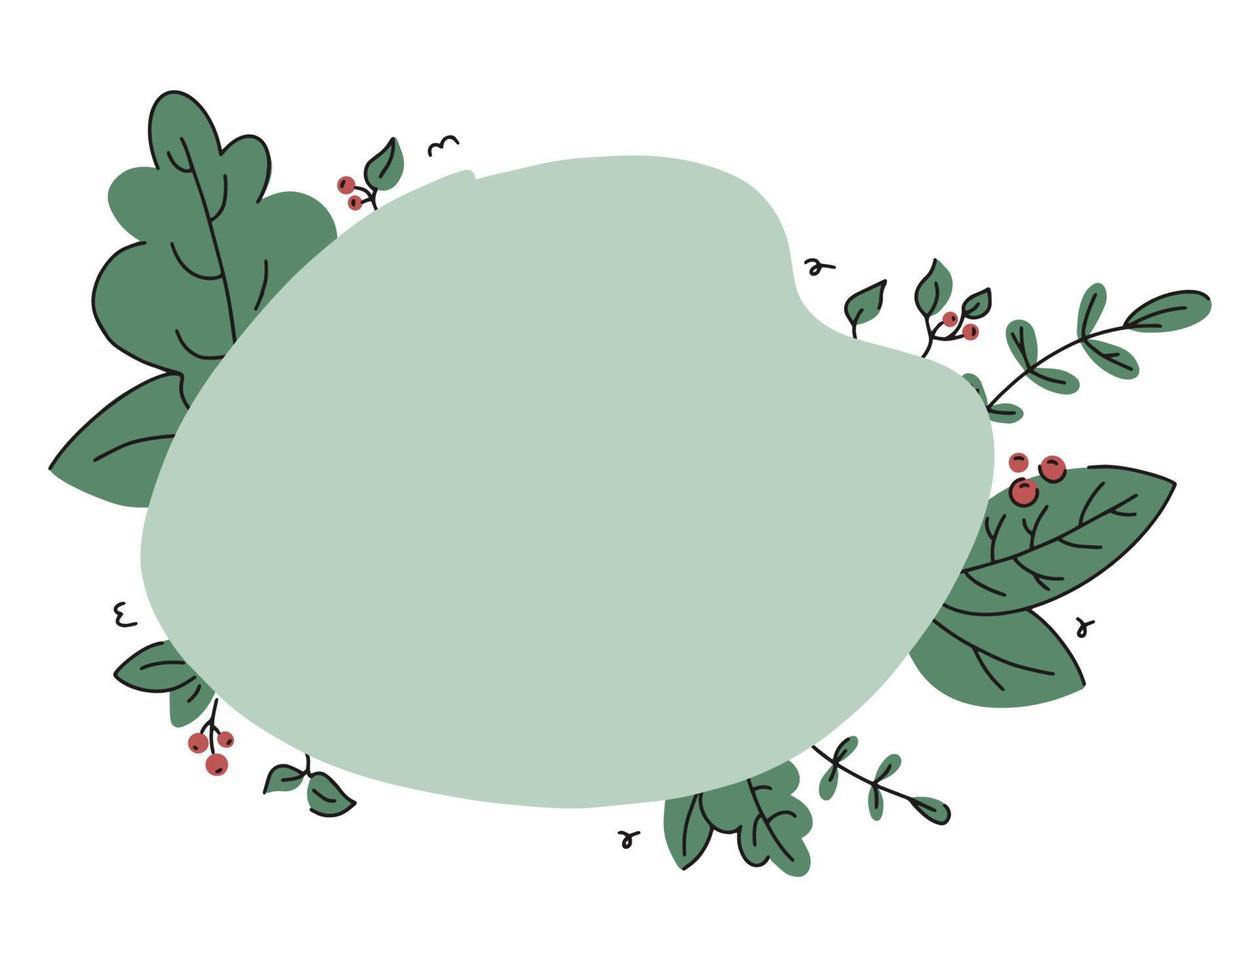 groen frame en sjabloon voor tekst met bladeren en bloemen in doodle stijl. vector